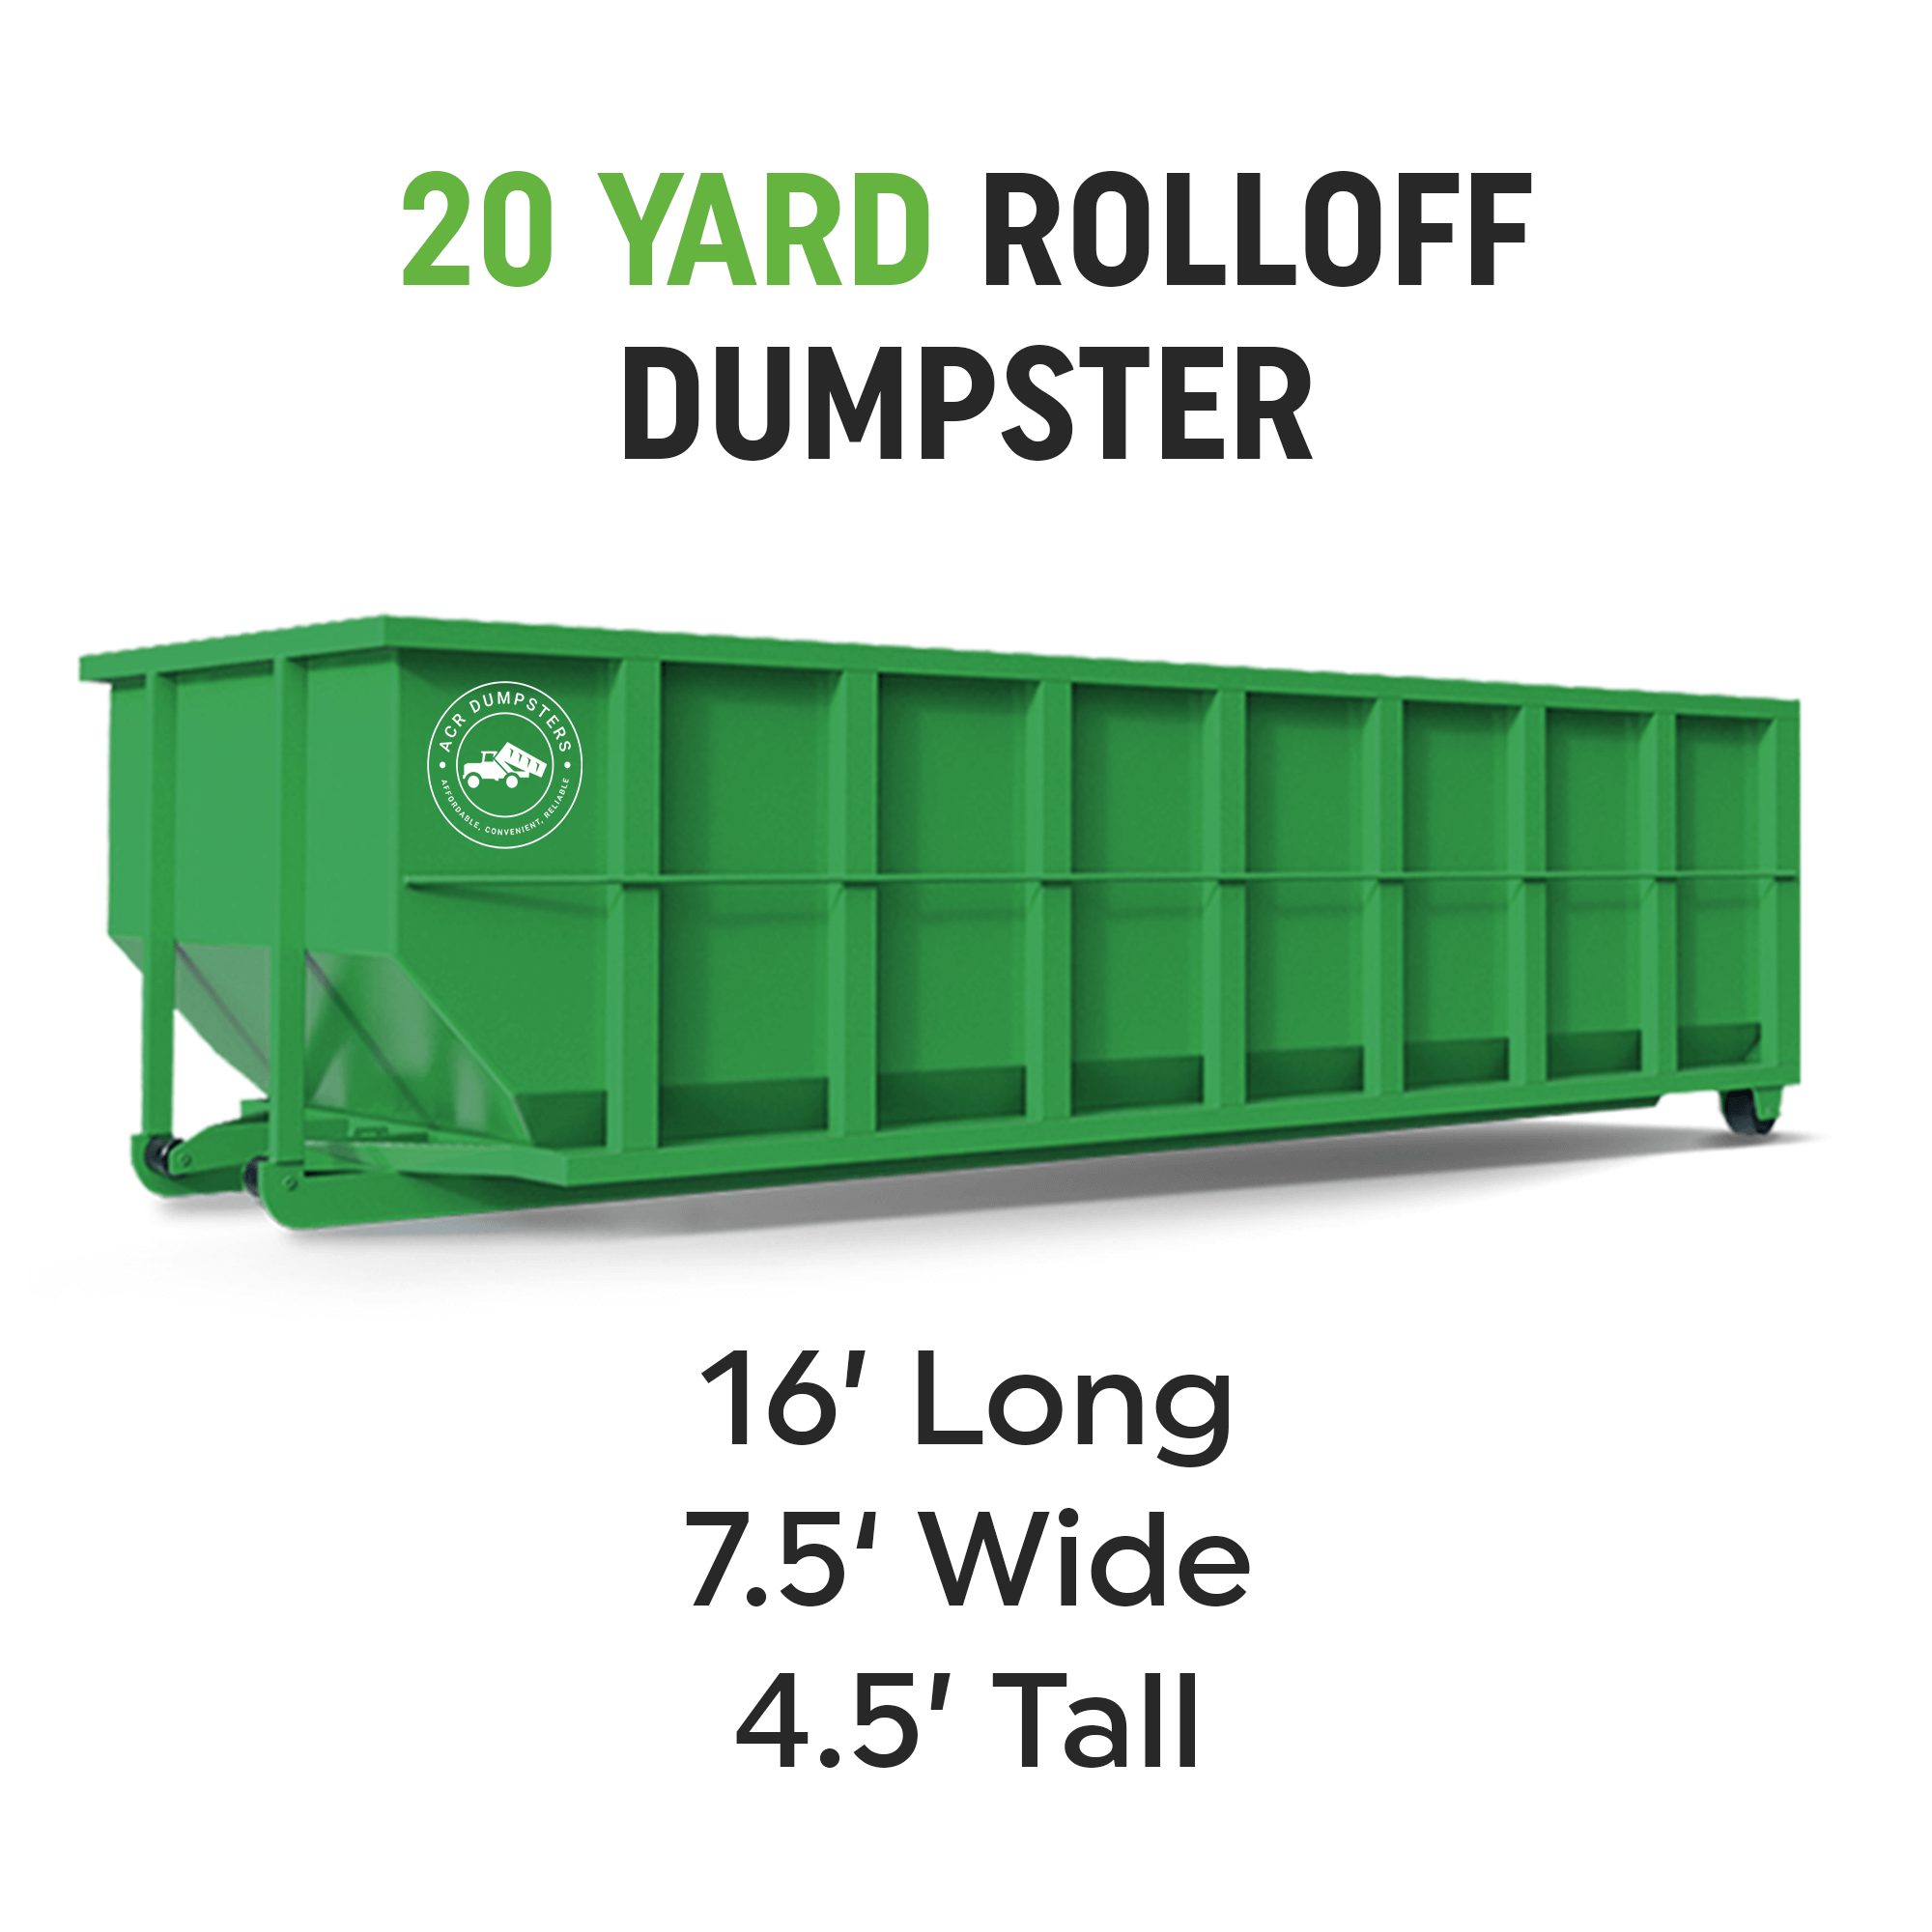 20 Yard Rolloff Dumpster 